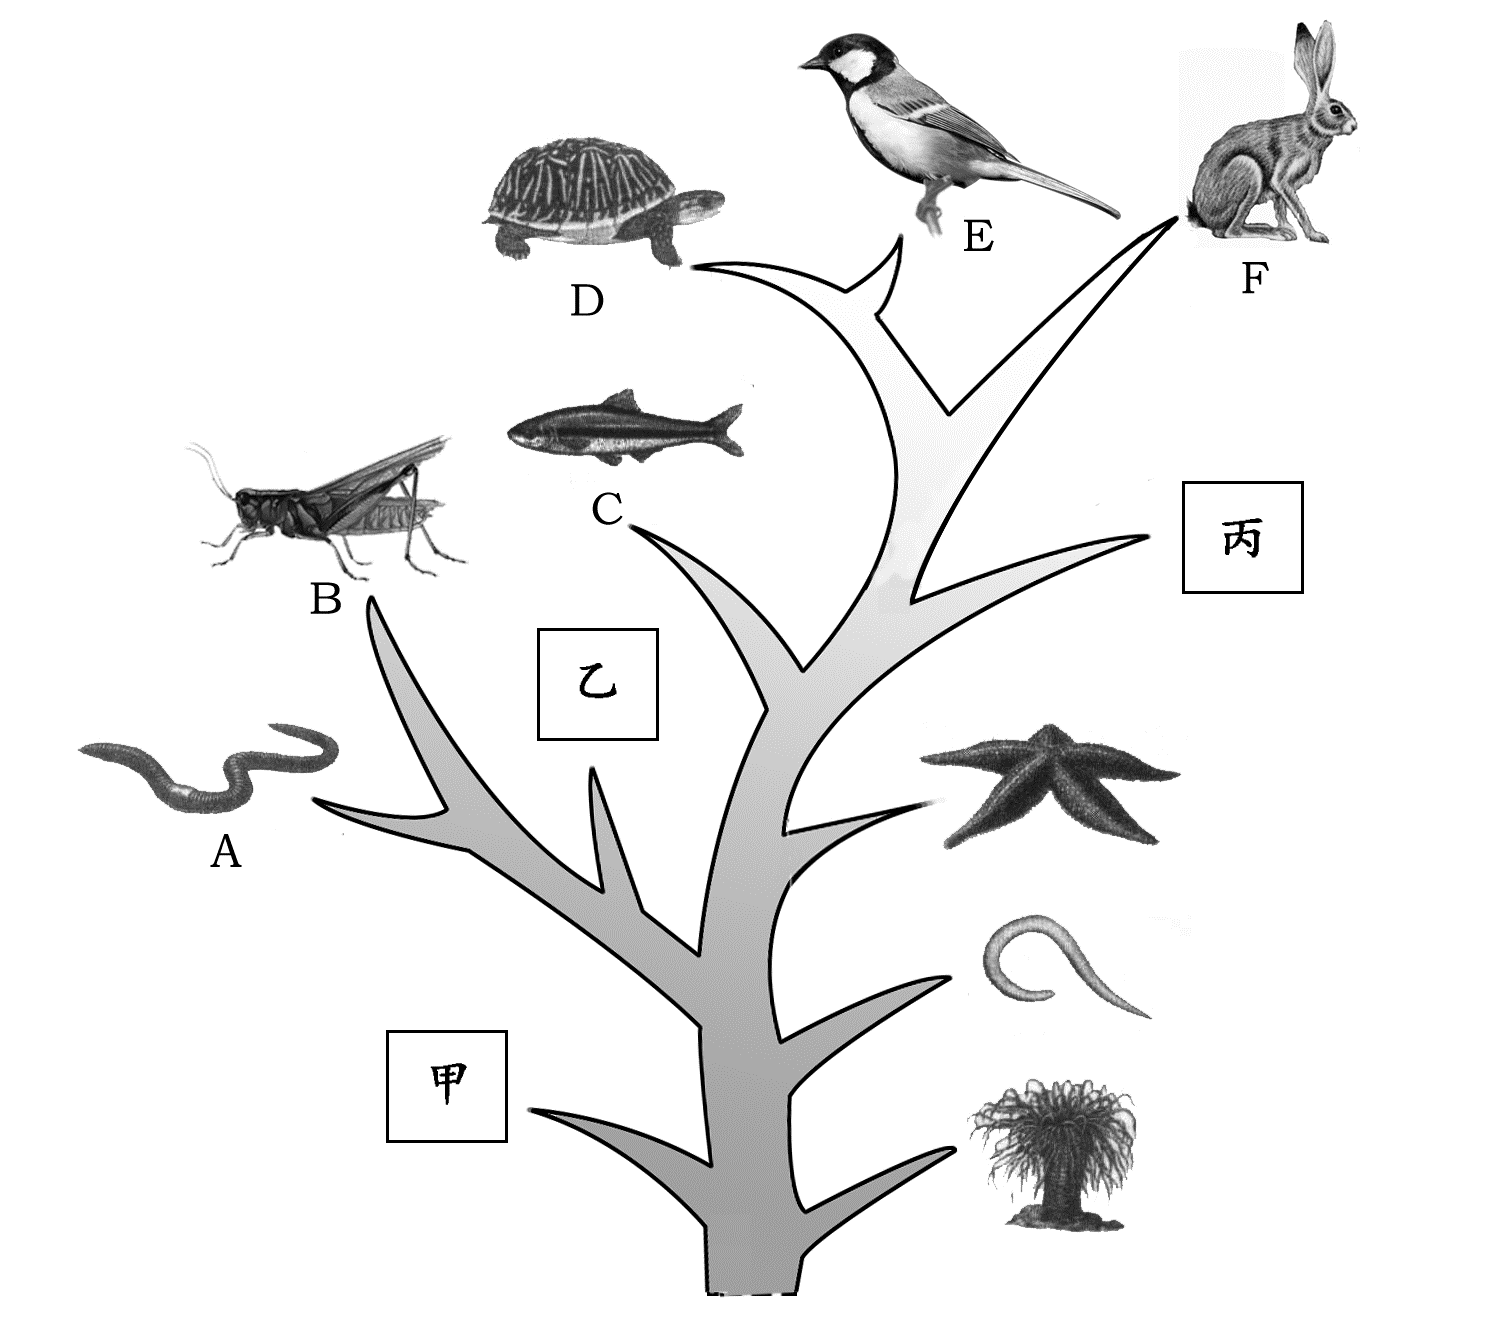 生物进化树初二图片图片